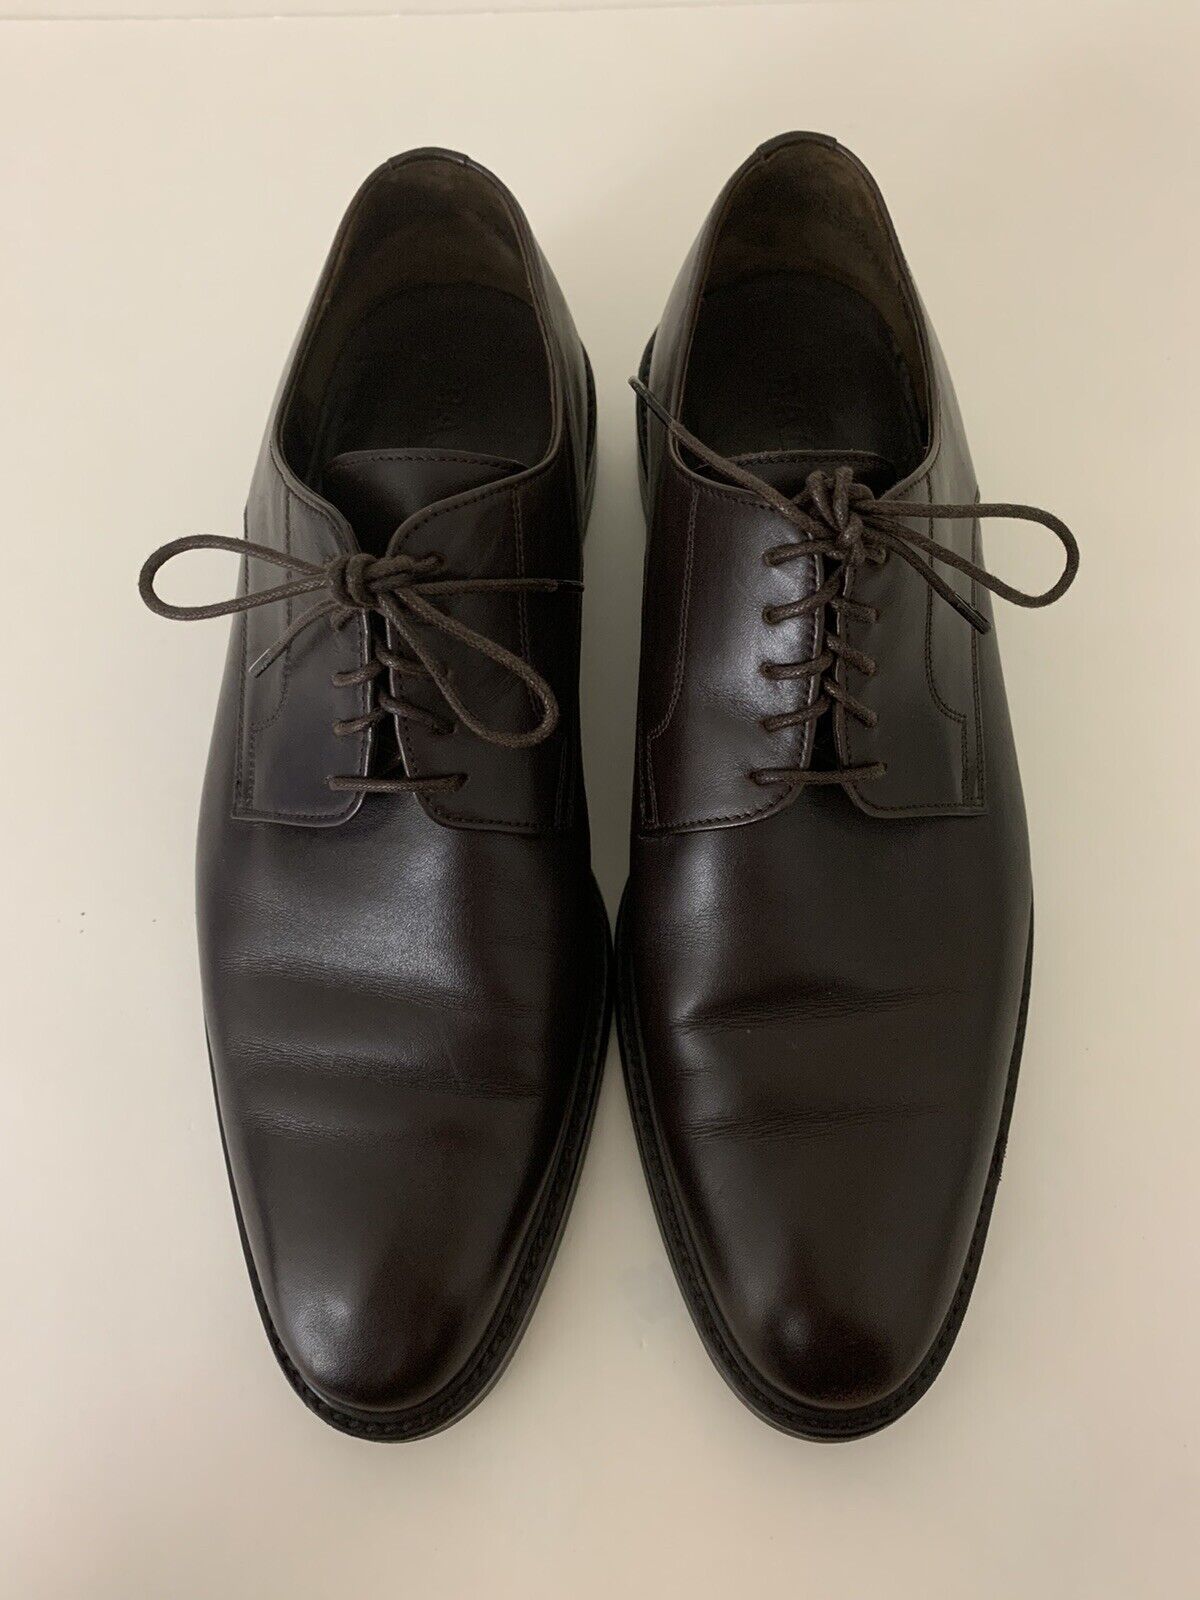 Bally Switzerland Z-Canol Dark Brown Leather Derby Shoe Mens Size US 9.5 EEE